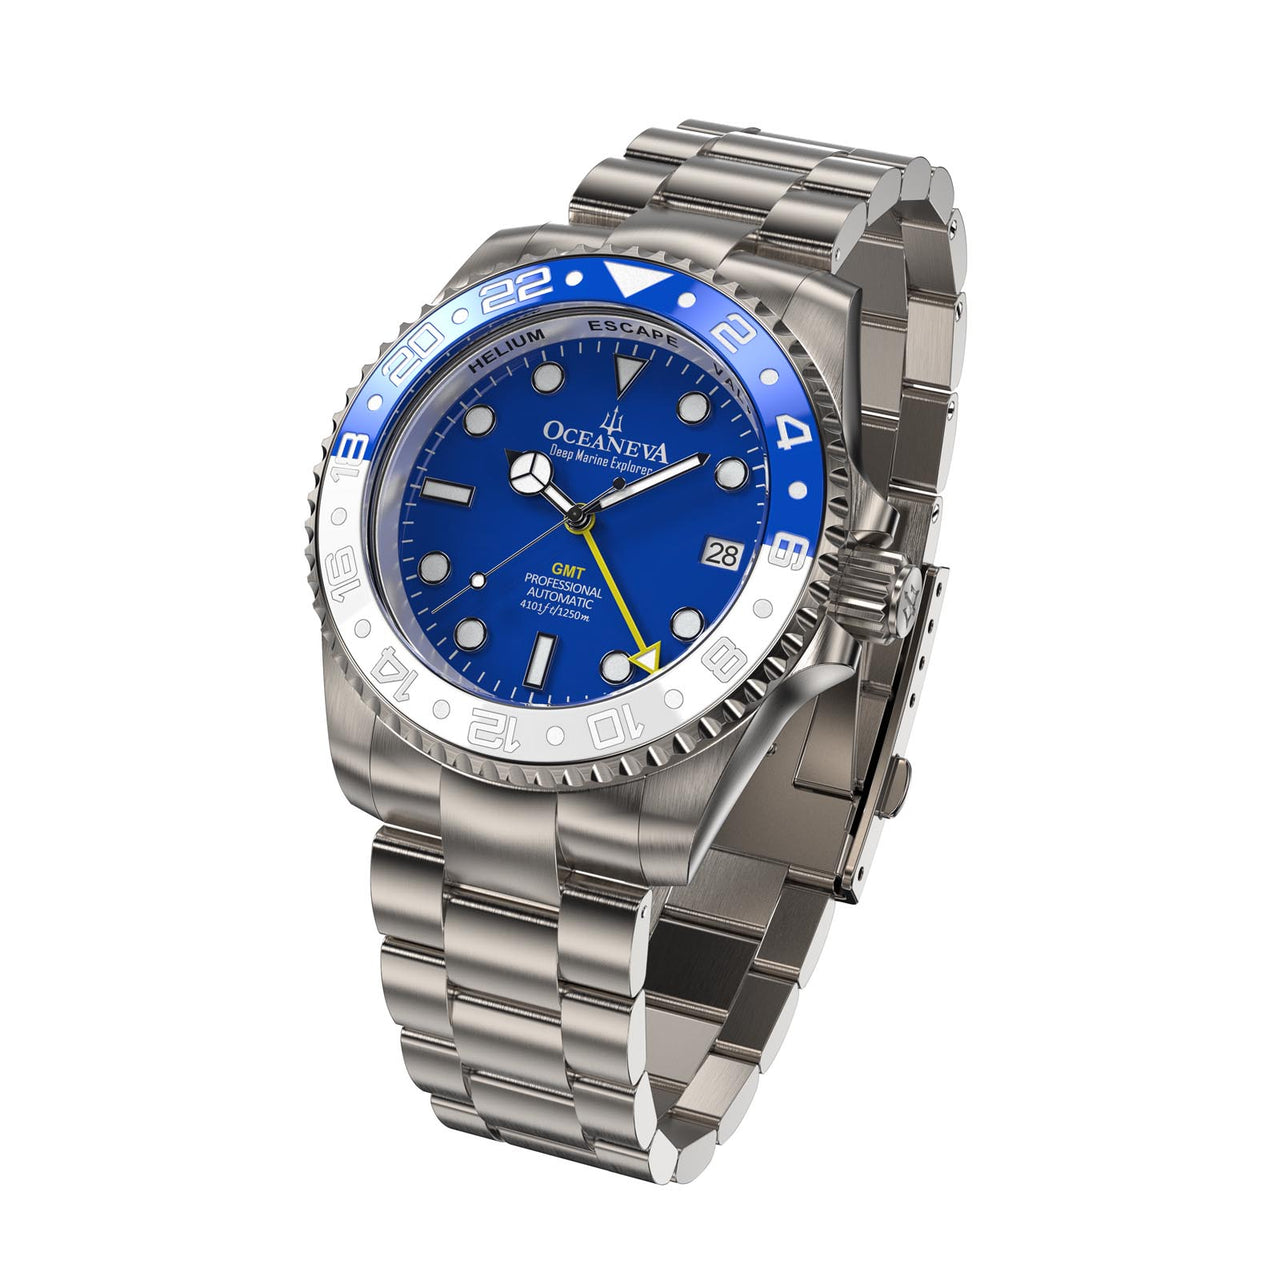 Oceaneva Men's Titanium Watch waterproof and dust-proof case detail